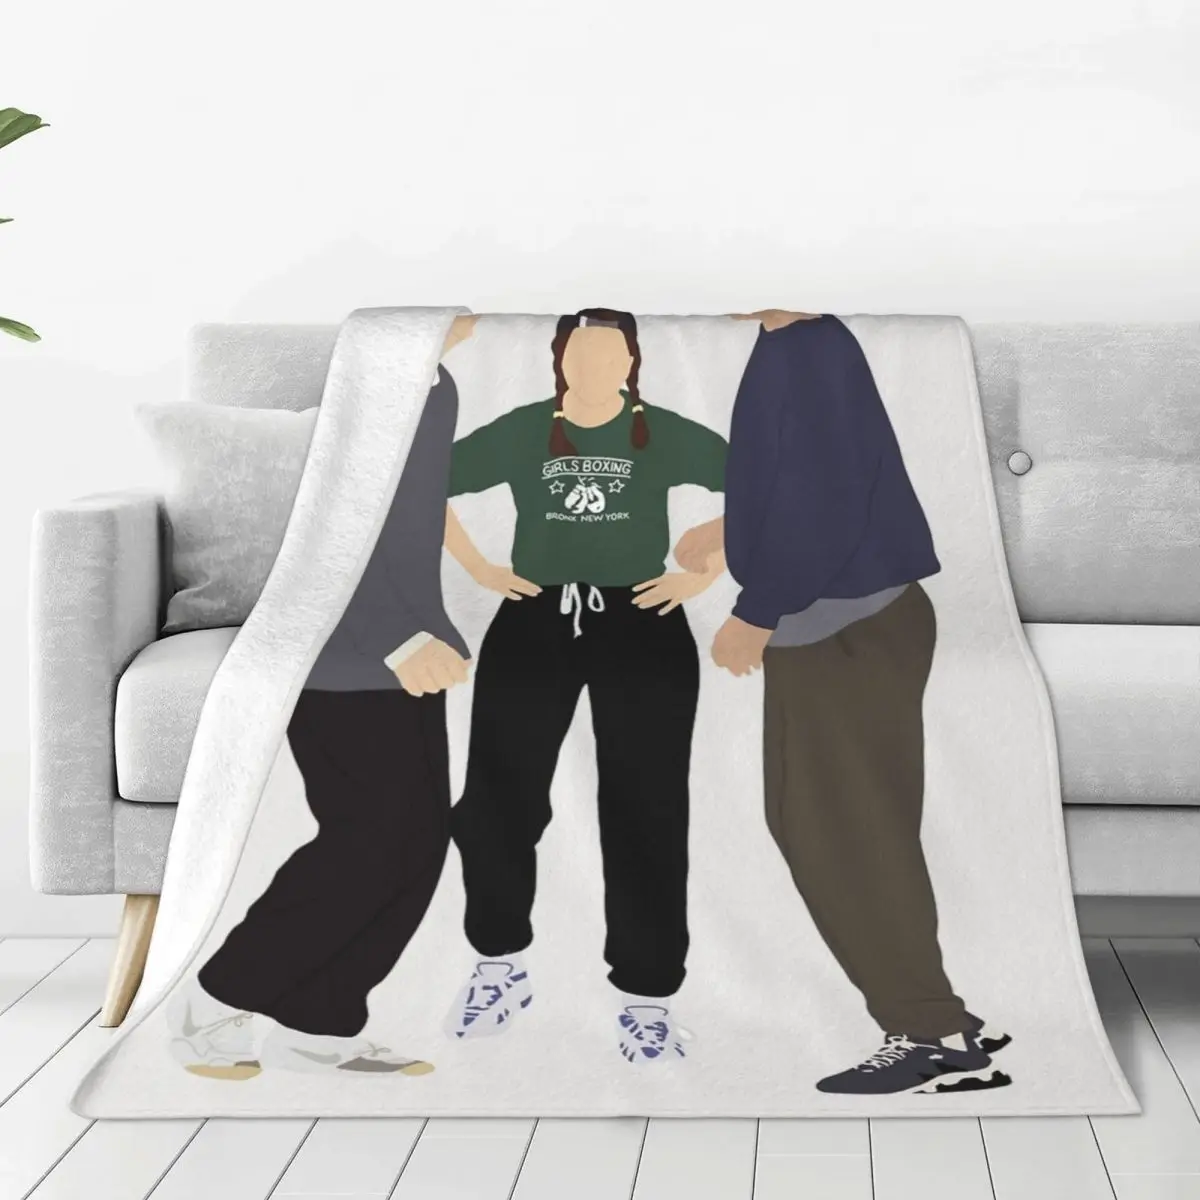 

Фланелевые одеяла с Рэйчел Росс Чандлер Мэтью Перри забавные Пледы для кровати, дивана, кушетки 125*100 см